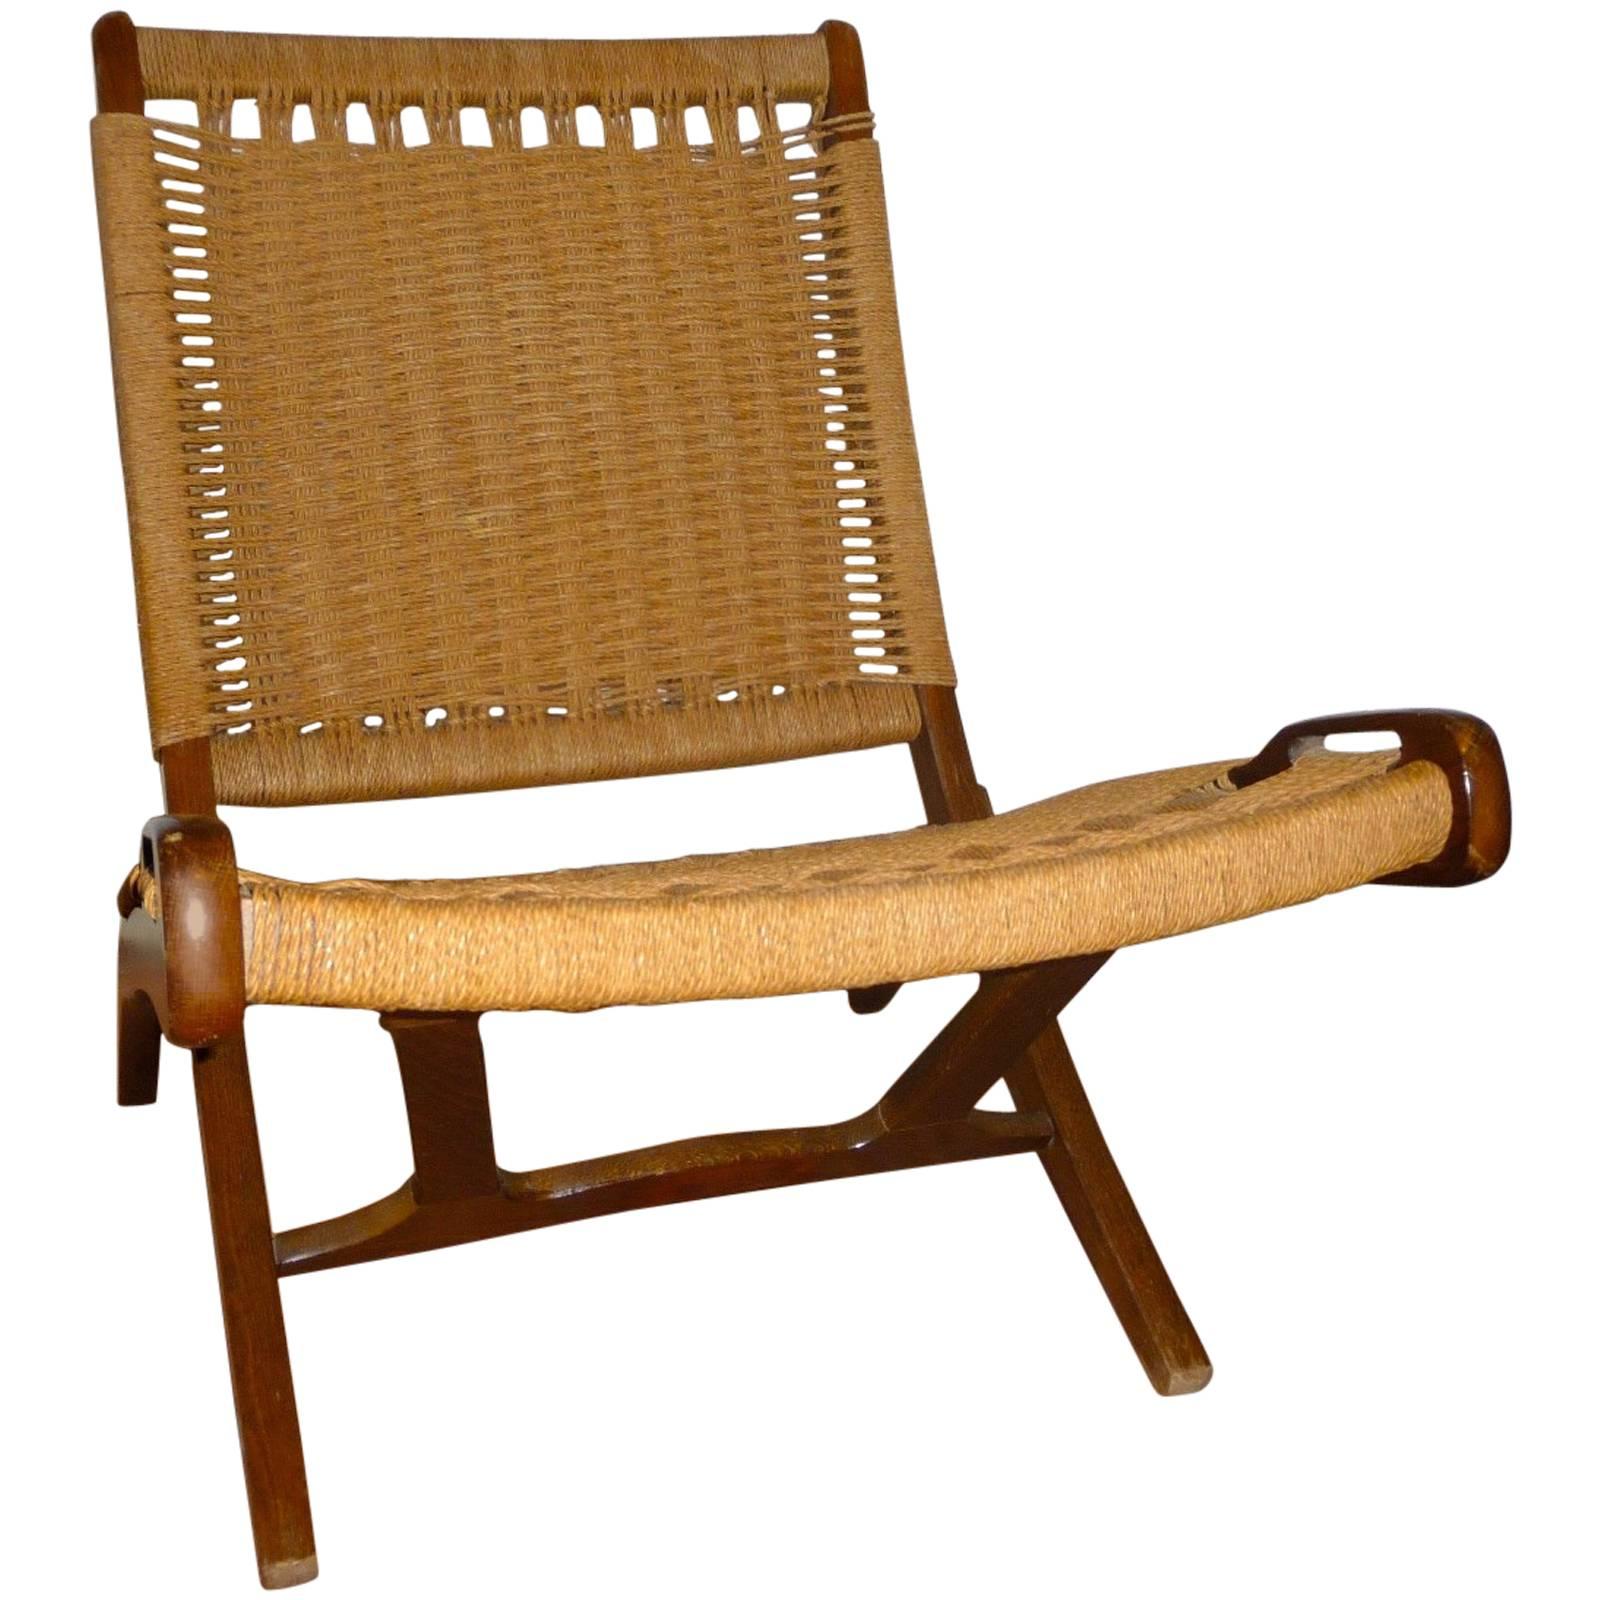 Hans J. Wegner, 1914-2007 "Denmark, ' Folding Chair